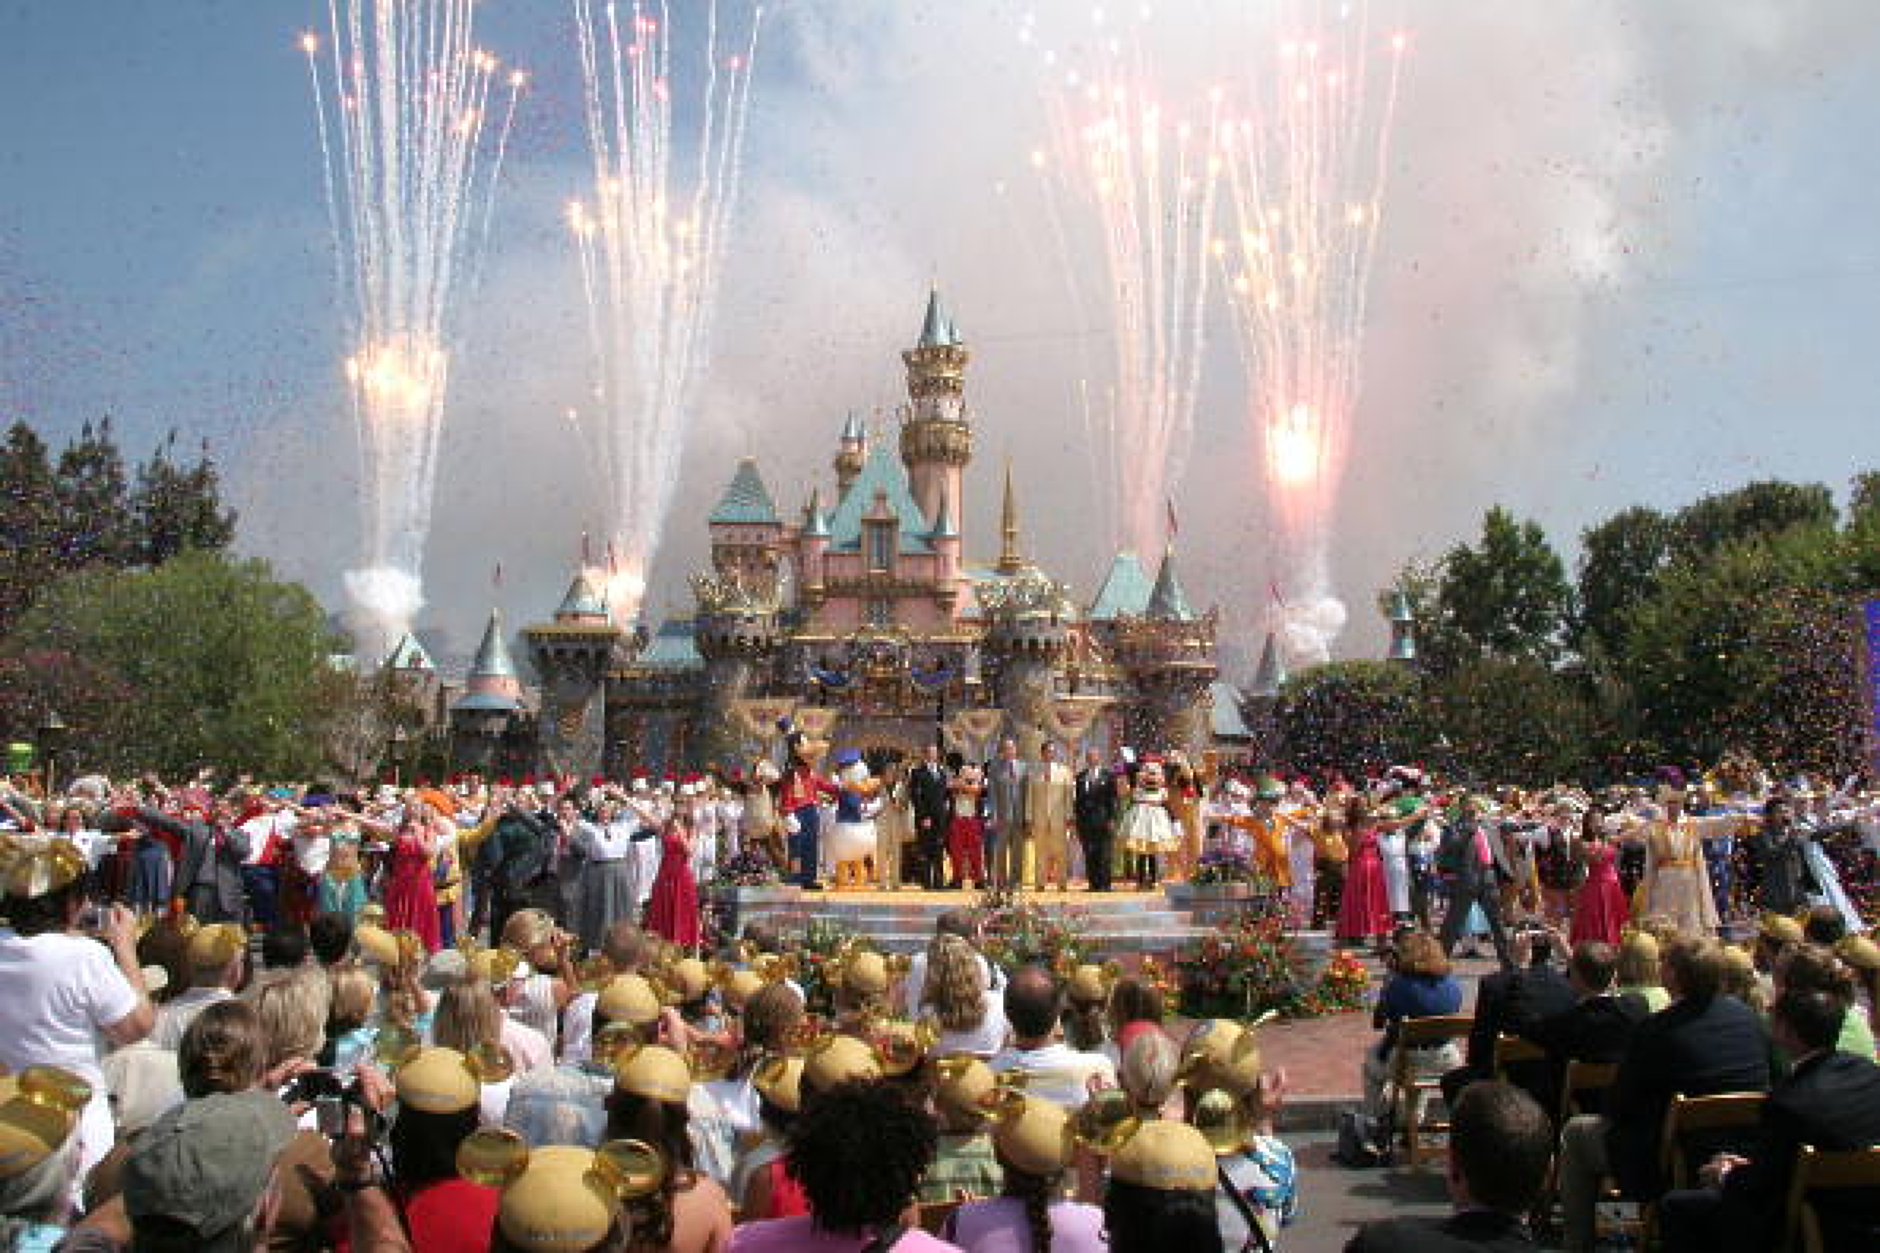 45 000 служители от Disney World отхвърлиха оферта от работодателя за колективен трудов договор 